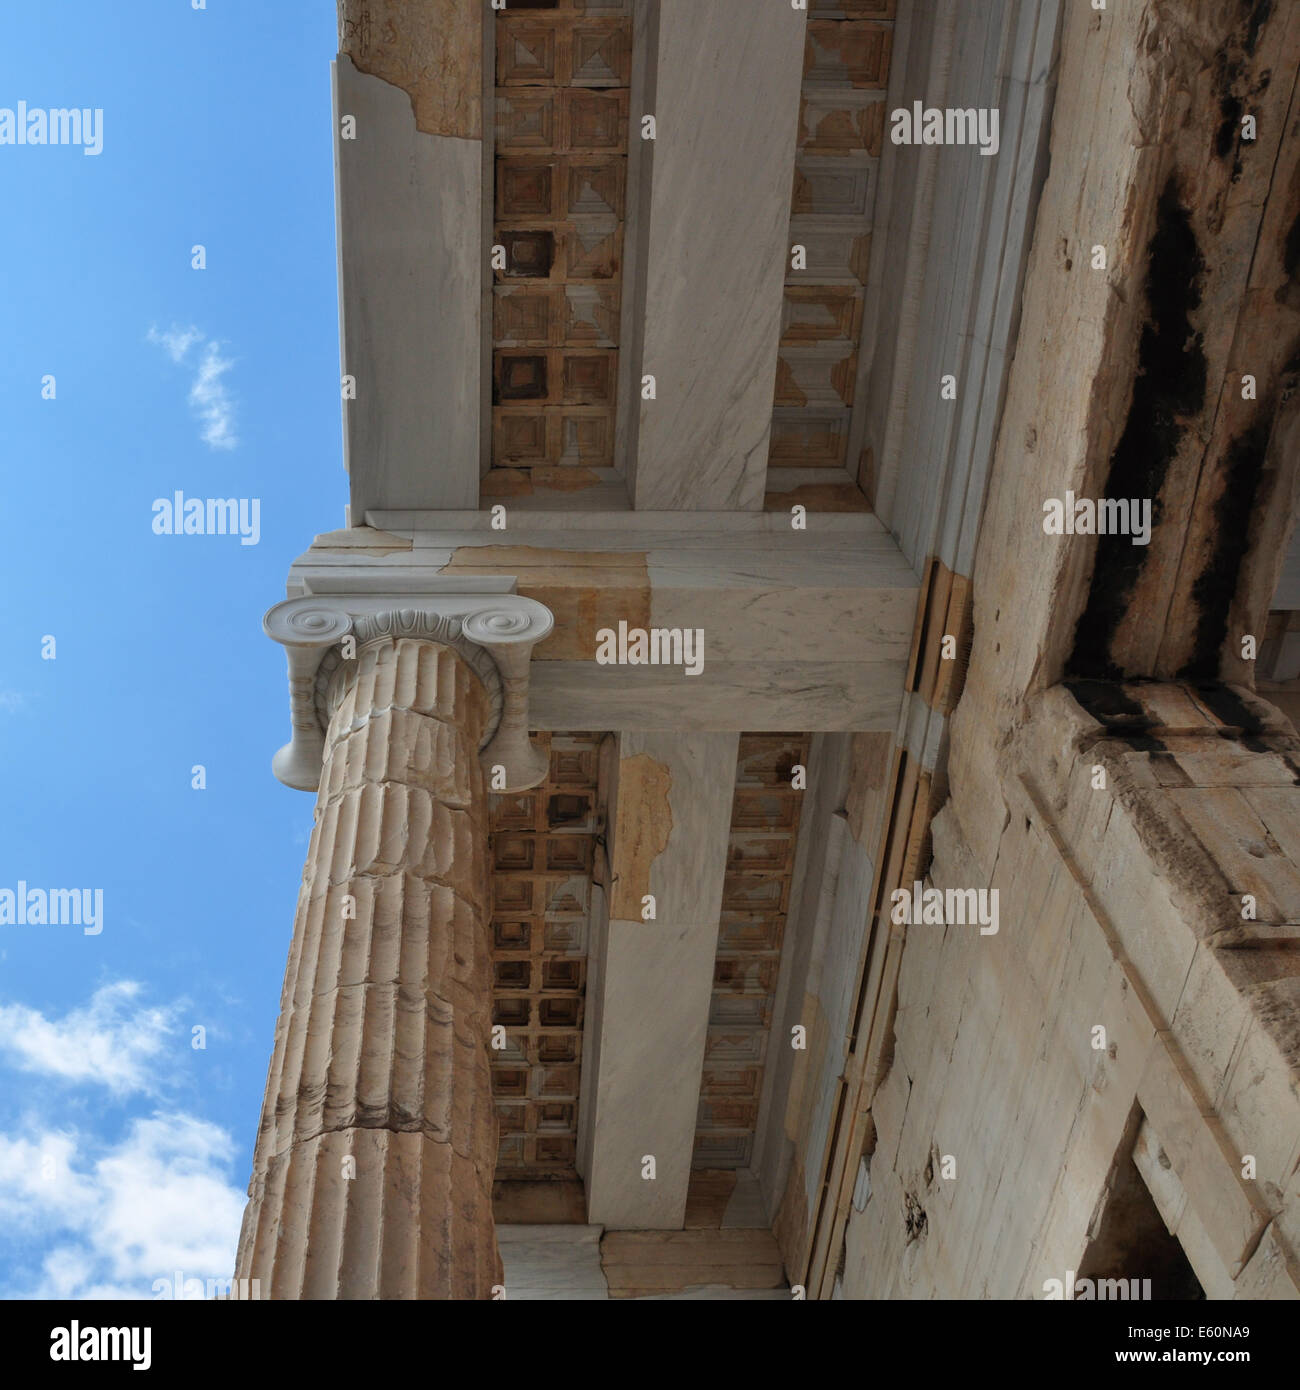 Colonna ionica e soffitto in marmo architettura antica dettaglio. Propylea Acropoli di Atene in Grecia. Foto Stock